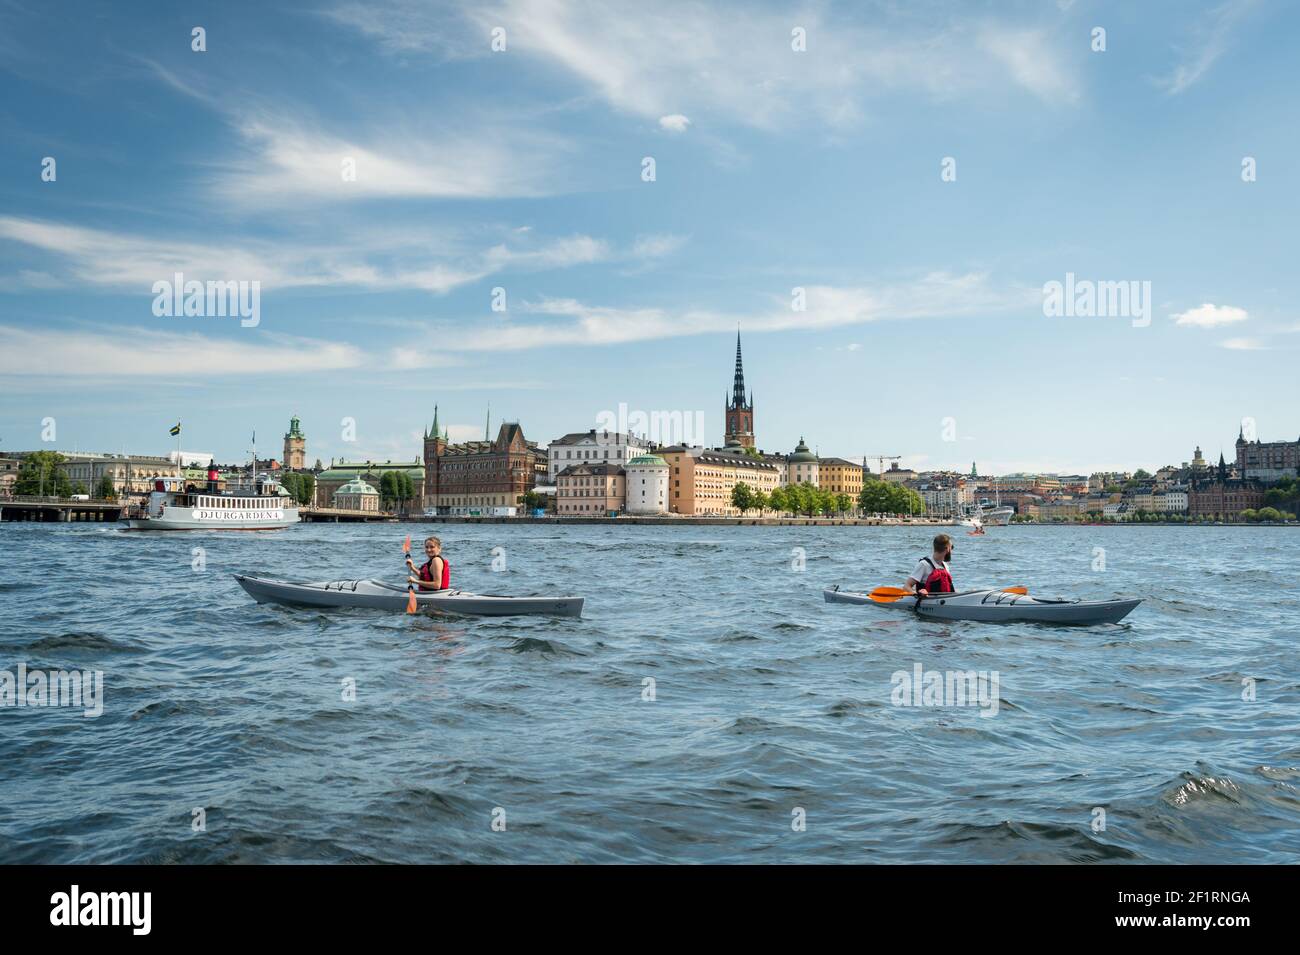 Kayakers on Riddarfjärden in front of Riddarholmen, Stockholm, Sweden. Stock Photo